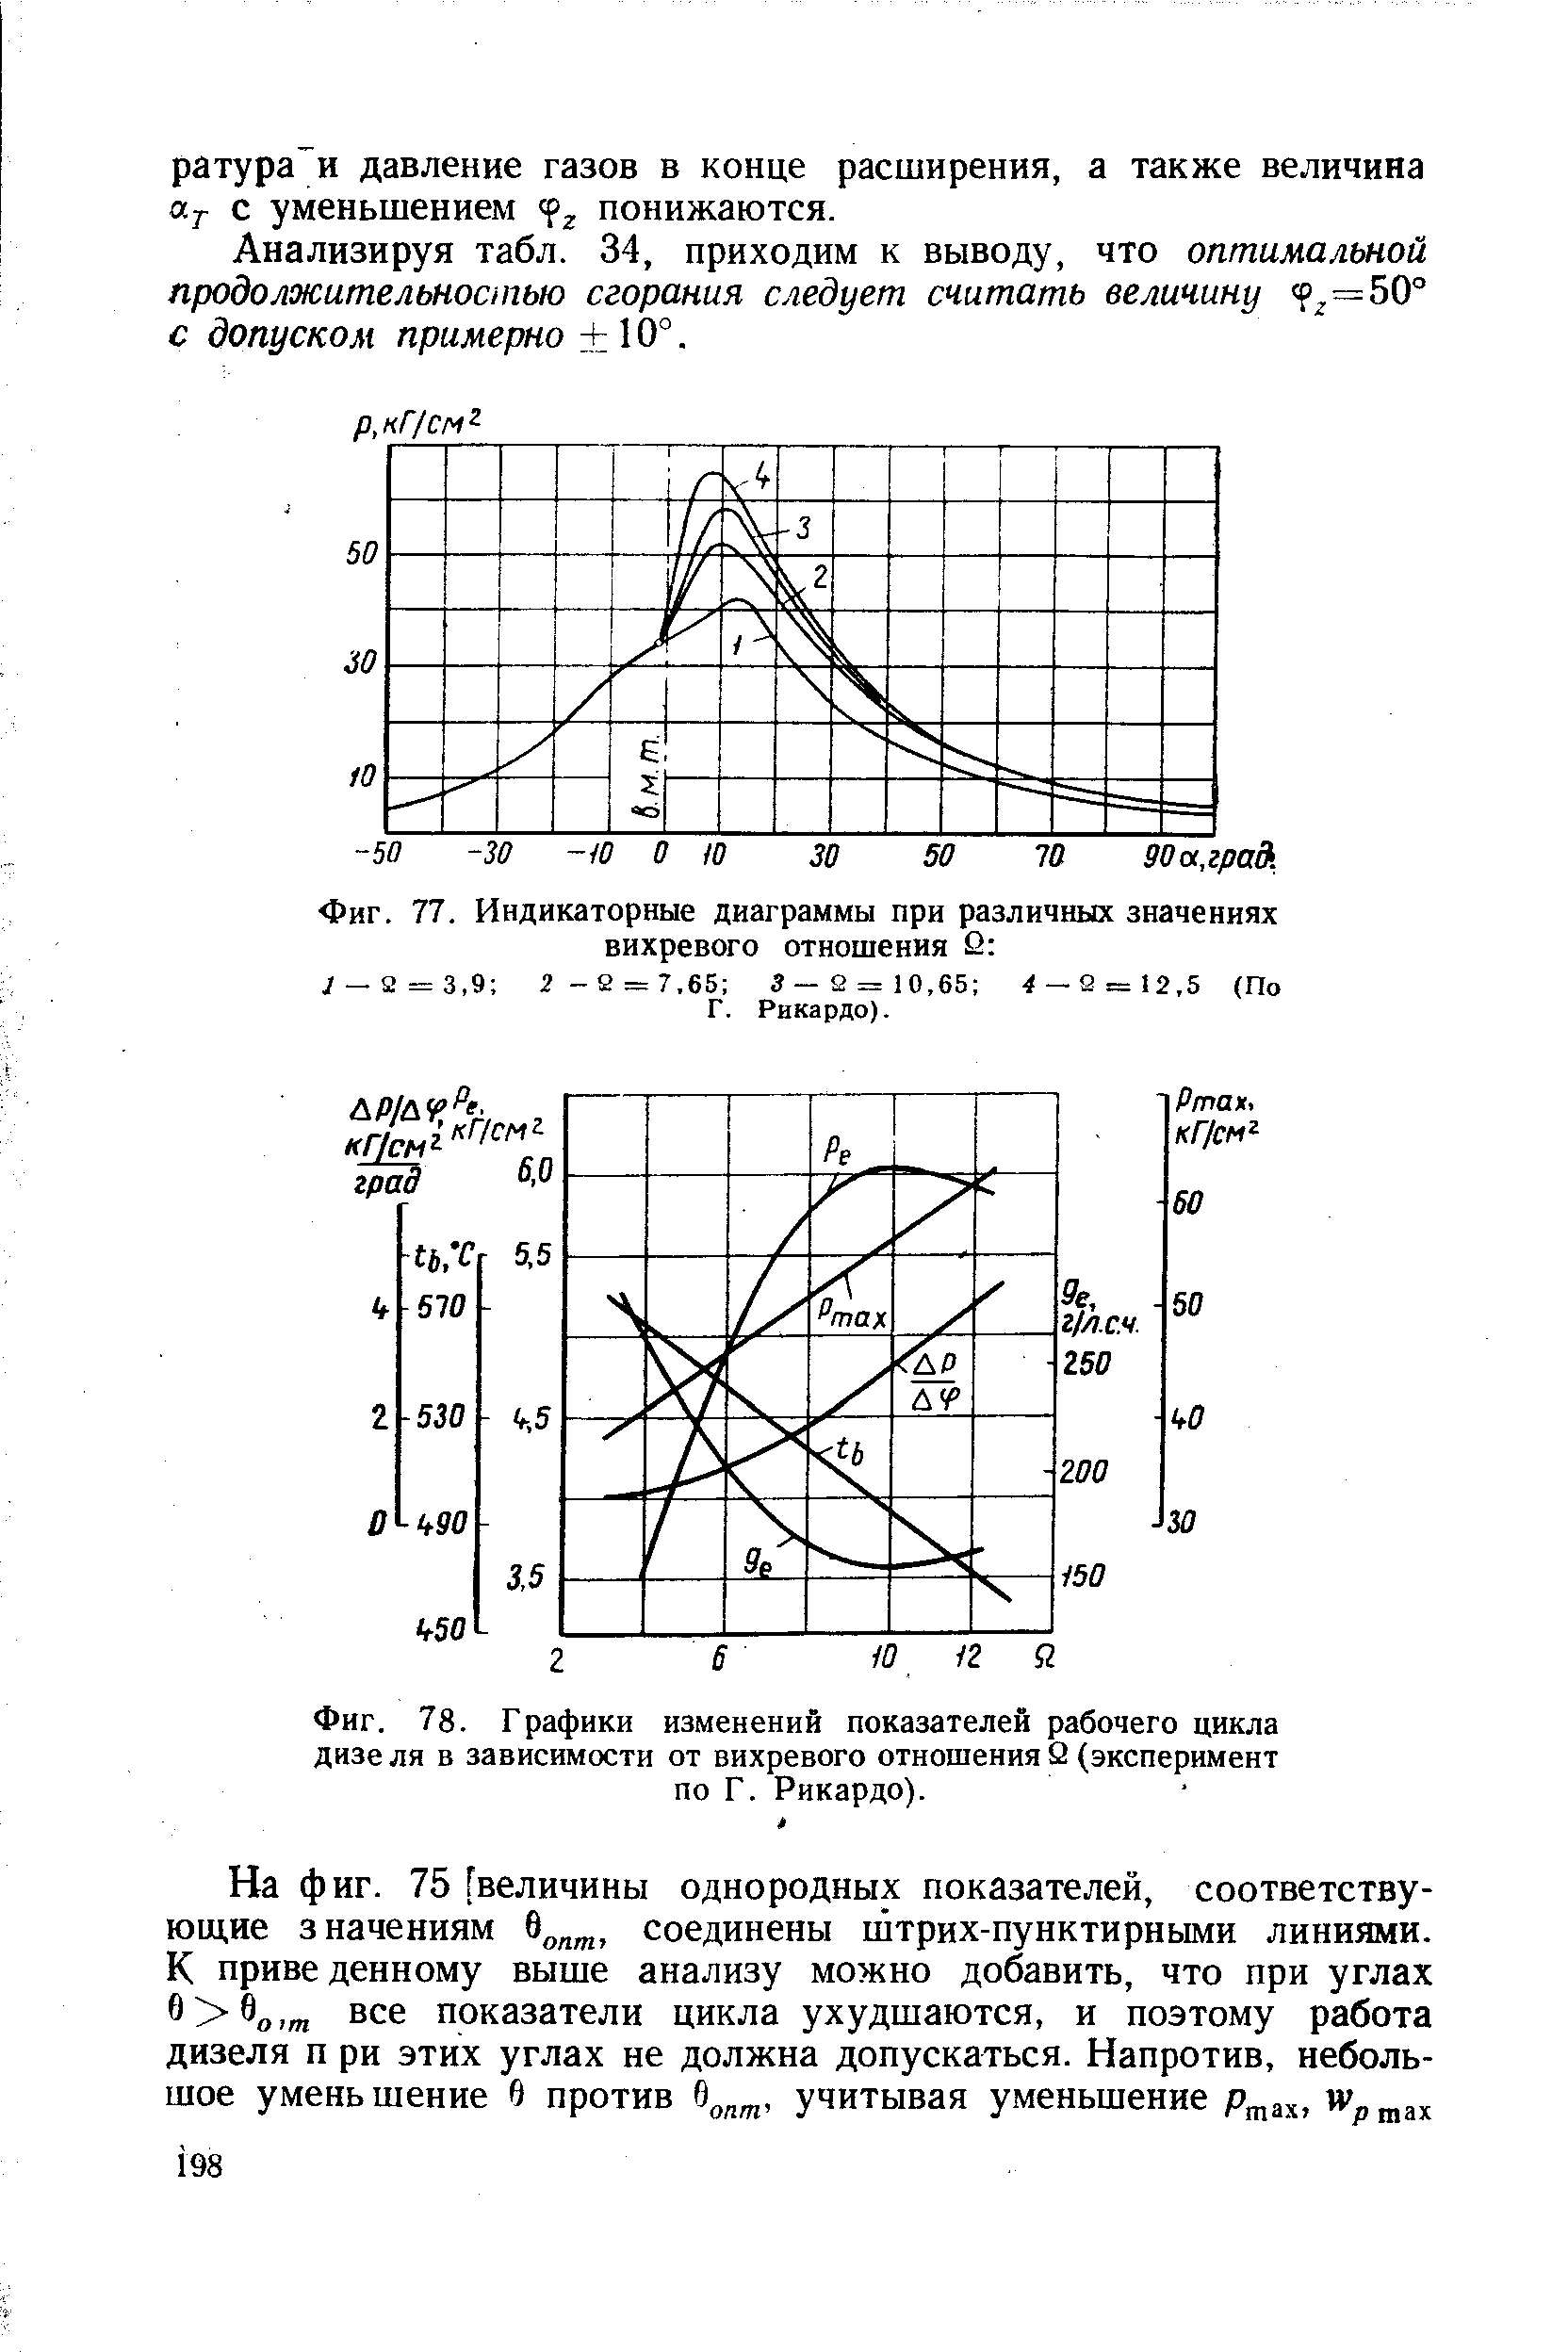 Фиг. 78. Графики изменений показателей рабочего цикла дизе ля в зависимости от вихревого отношения 2 (эксперимент по Г. Рикардо).
